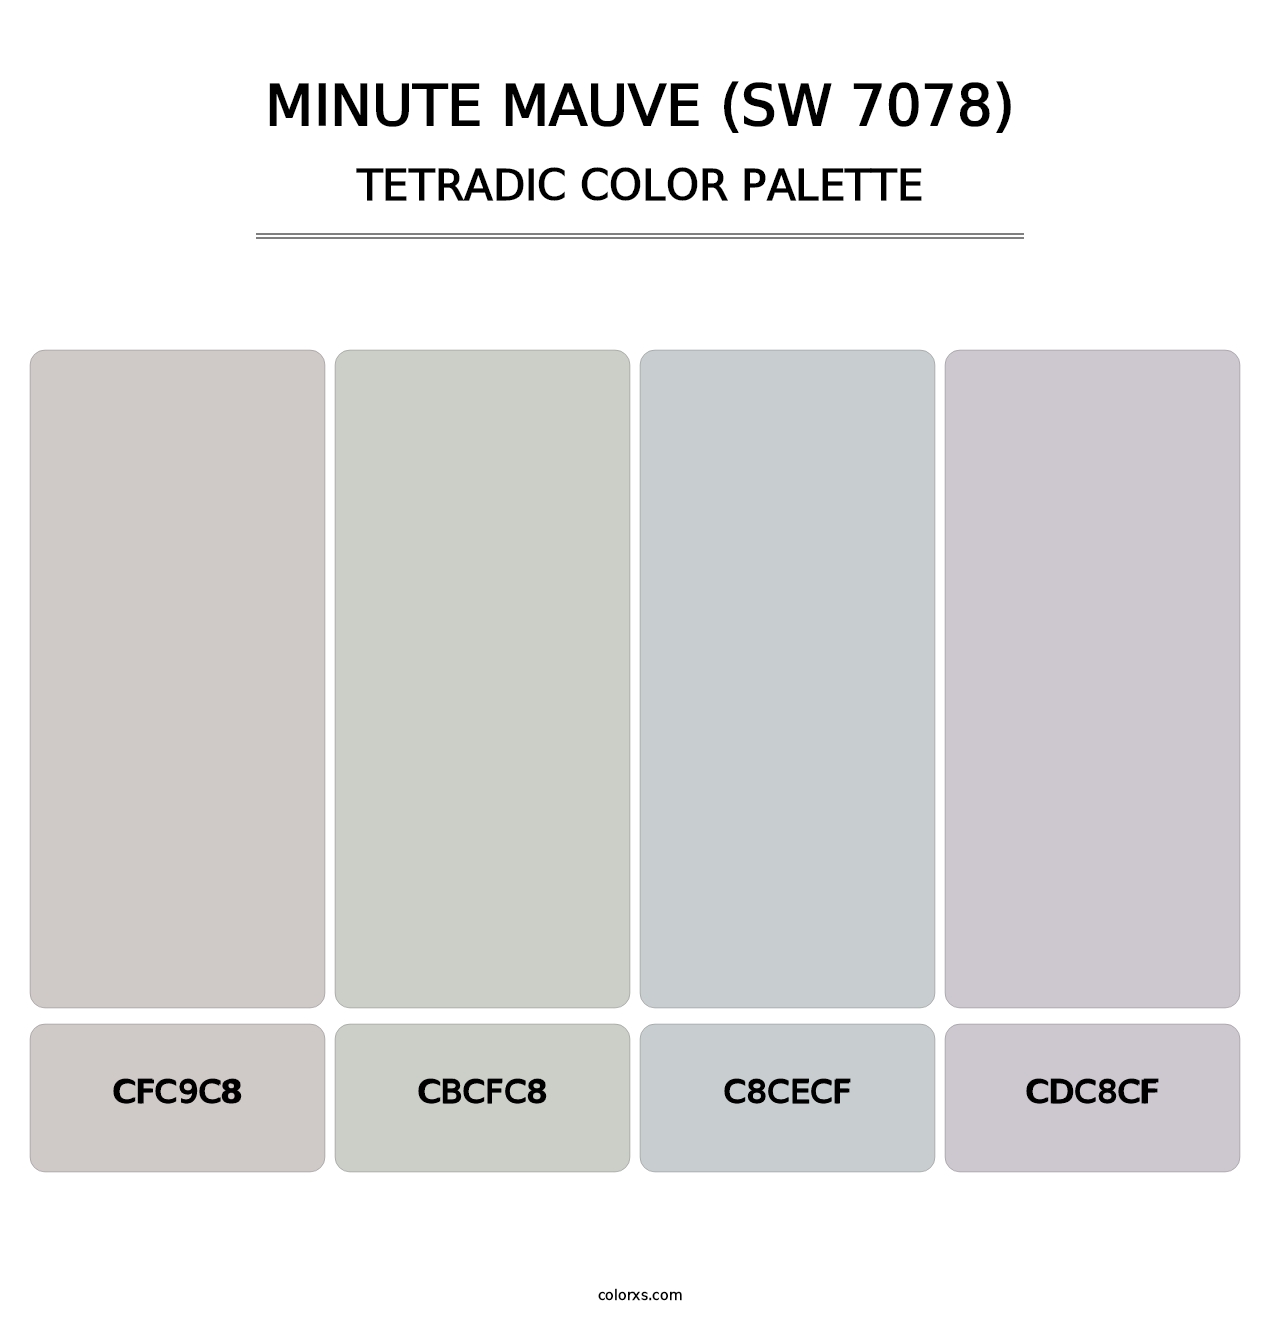 Minute Mauve (SW 7078) - Tetradic Color Palette